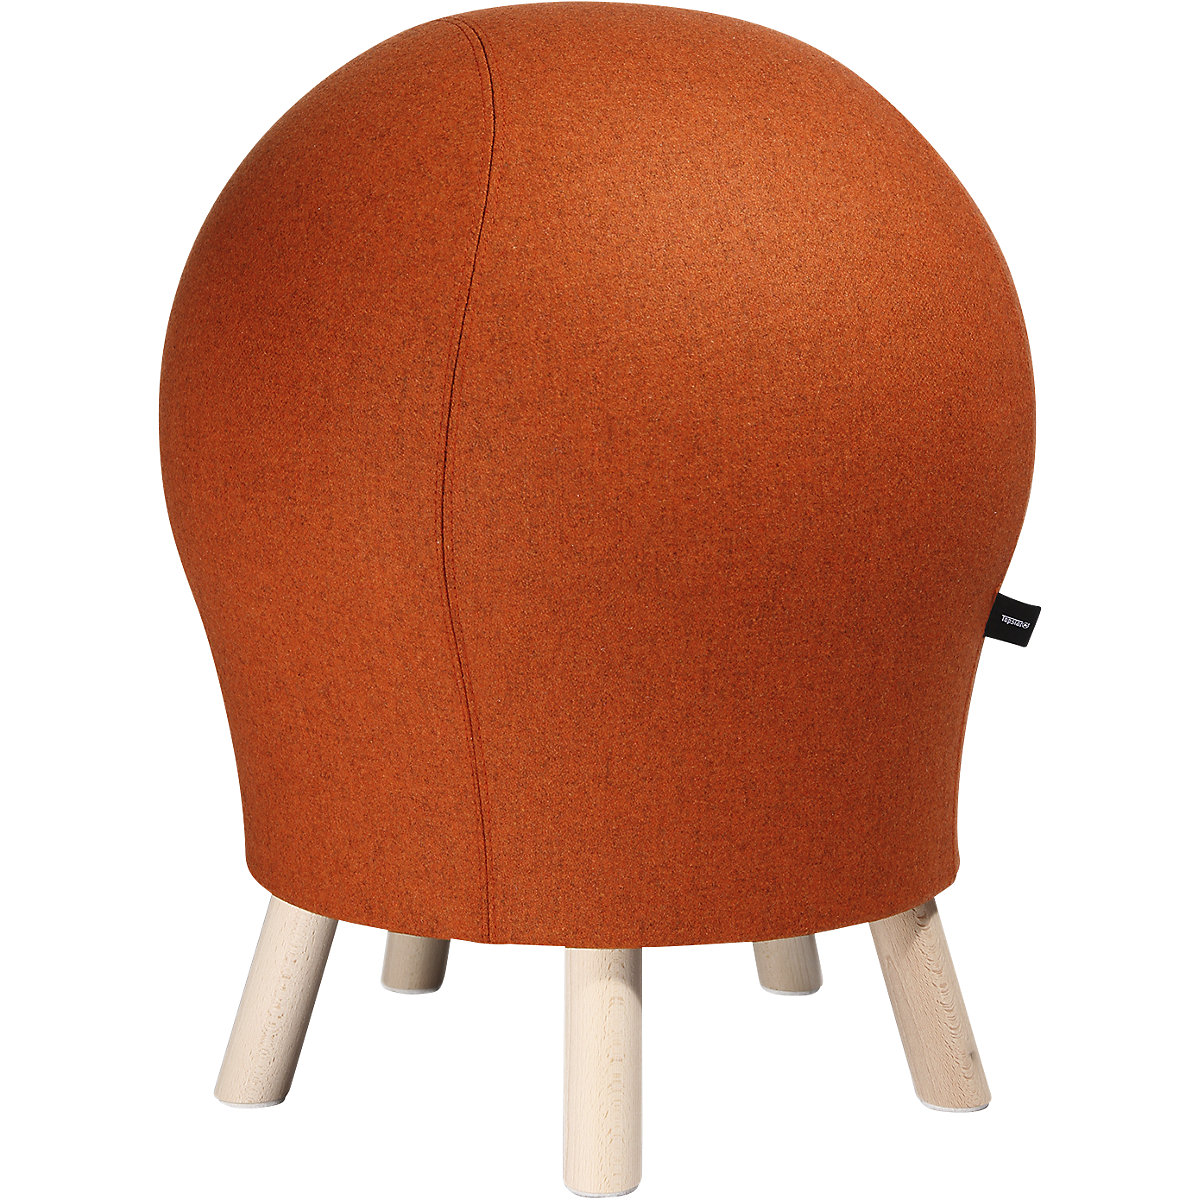 Fitness stolička SITNESS 5 ALPINE – Topstar, výška sedáku cca 620 mm, potah oranžový-2